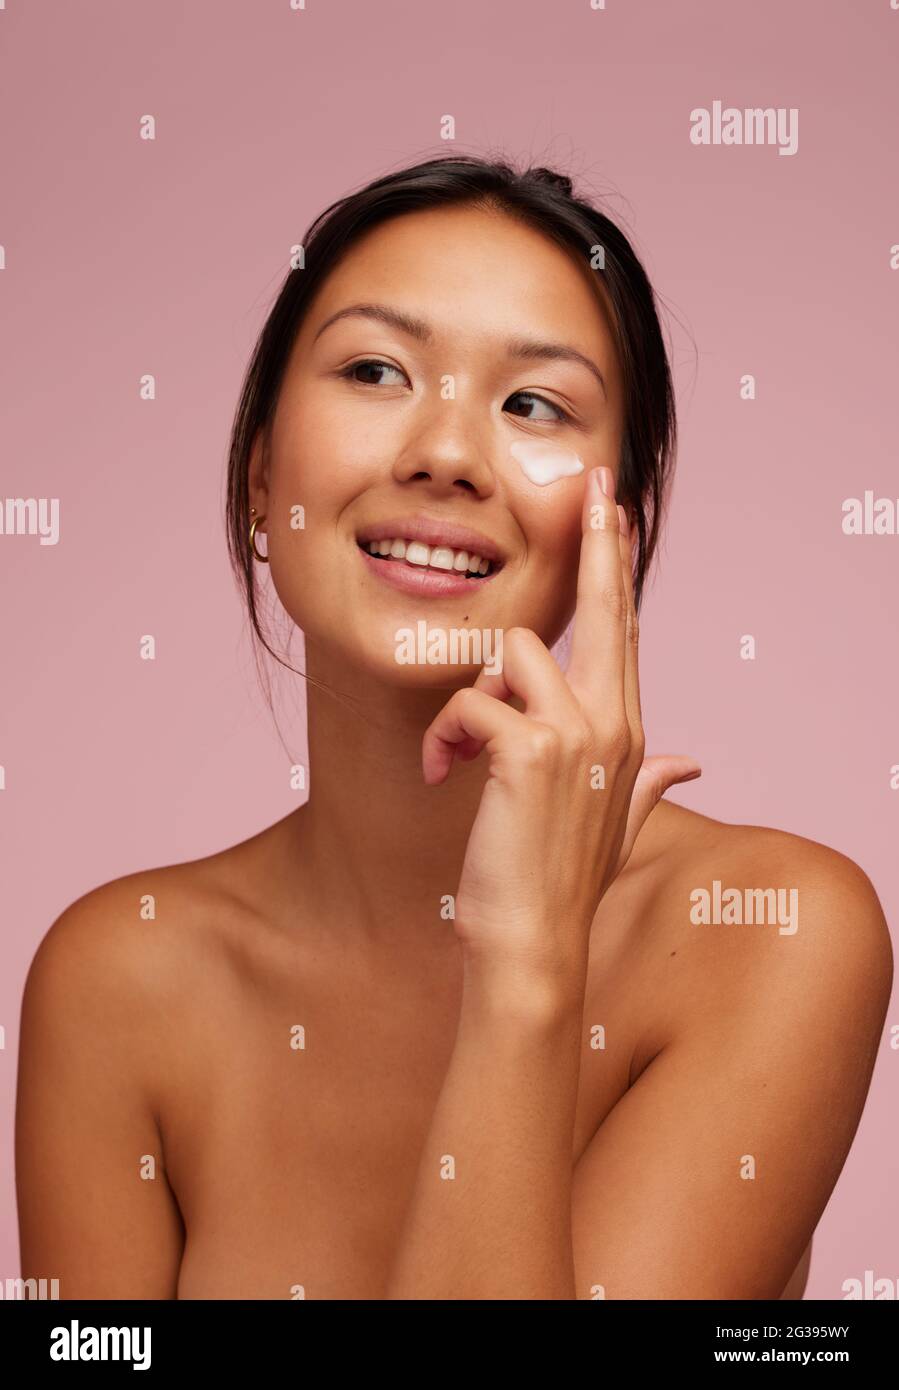 Ritratto di una bella donna che applica crema idratante sul viso. Donna che usa il prodotto di bellezza sulla sua pelle del viso e guardando via. Foto Stock